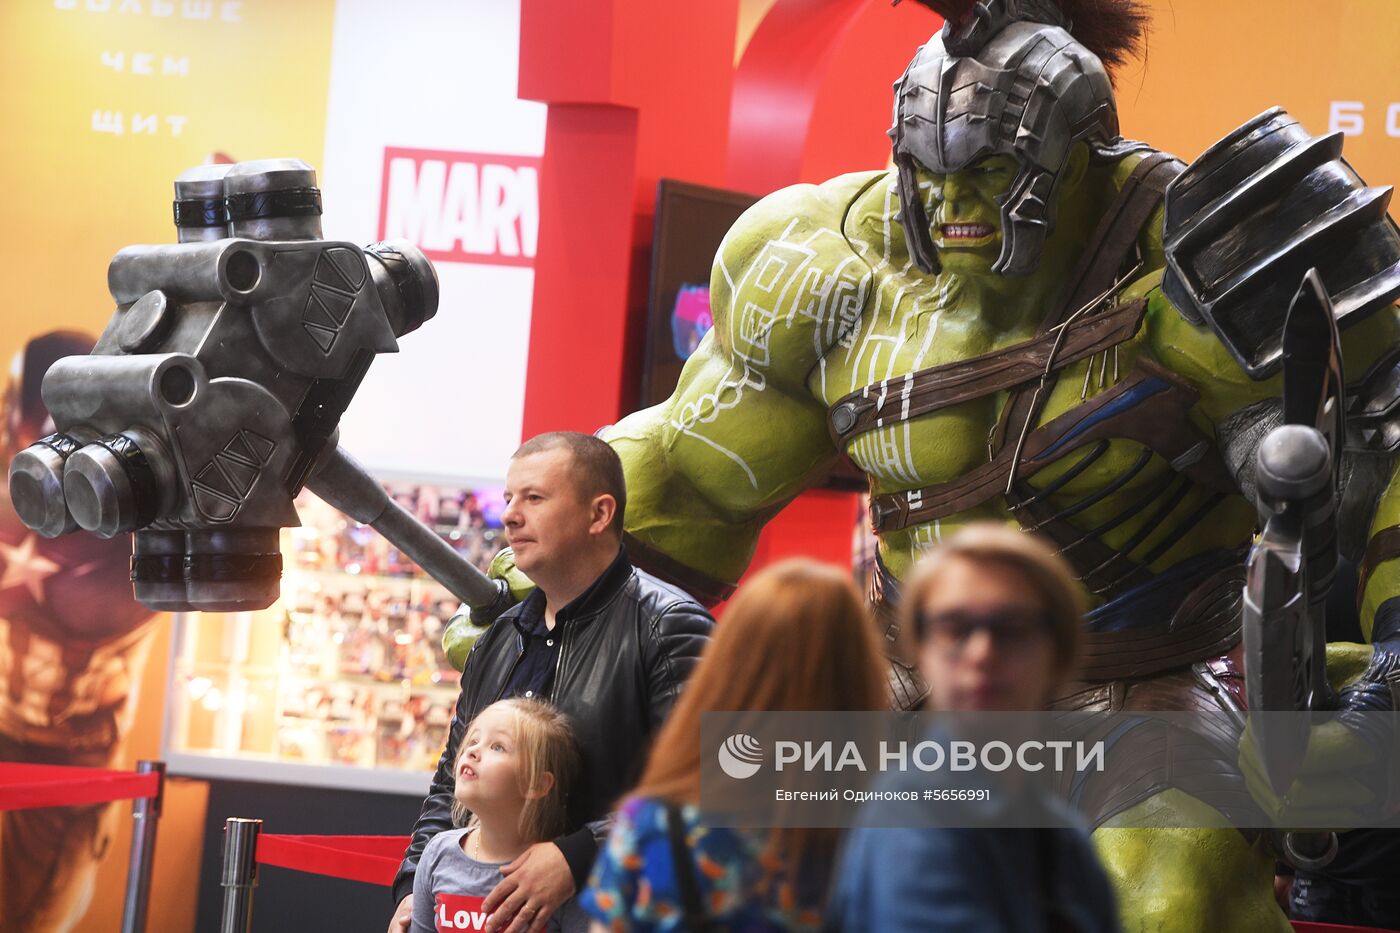 Выставка  "Игромир" и фестиваль Comic Con Russia